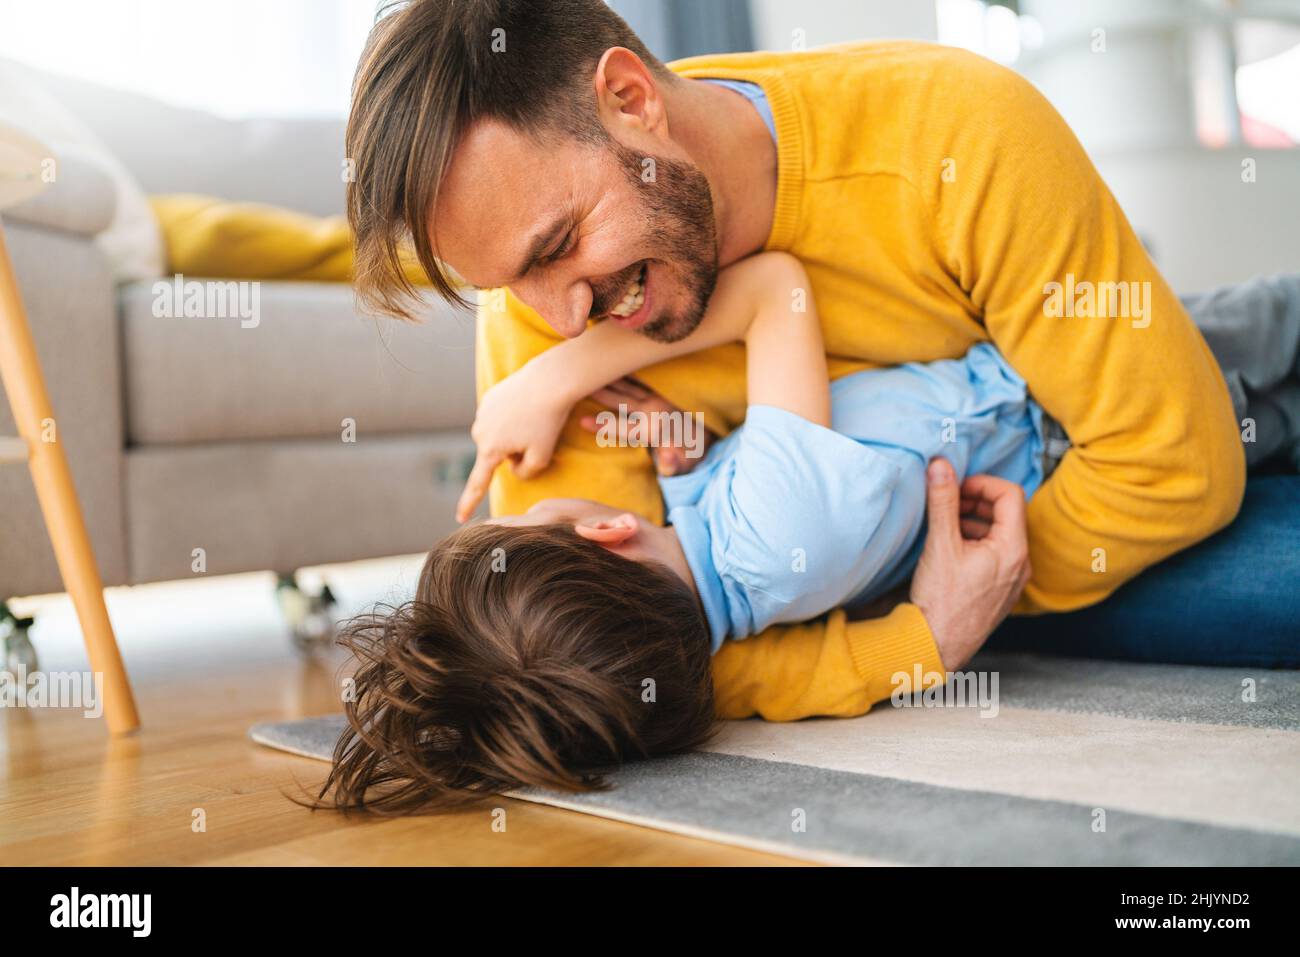 Gioioso ragazzo del bambino che si diverte, giocando con suo padre insieme a casa. Foto Stock